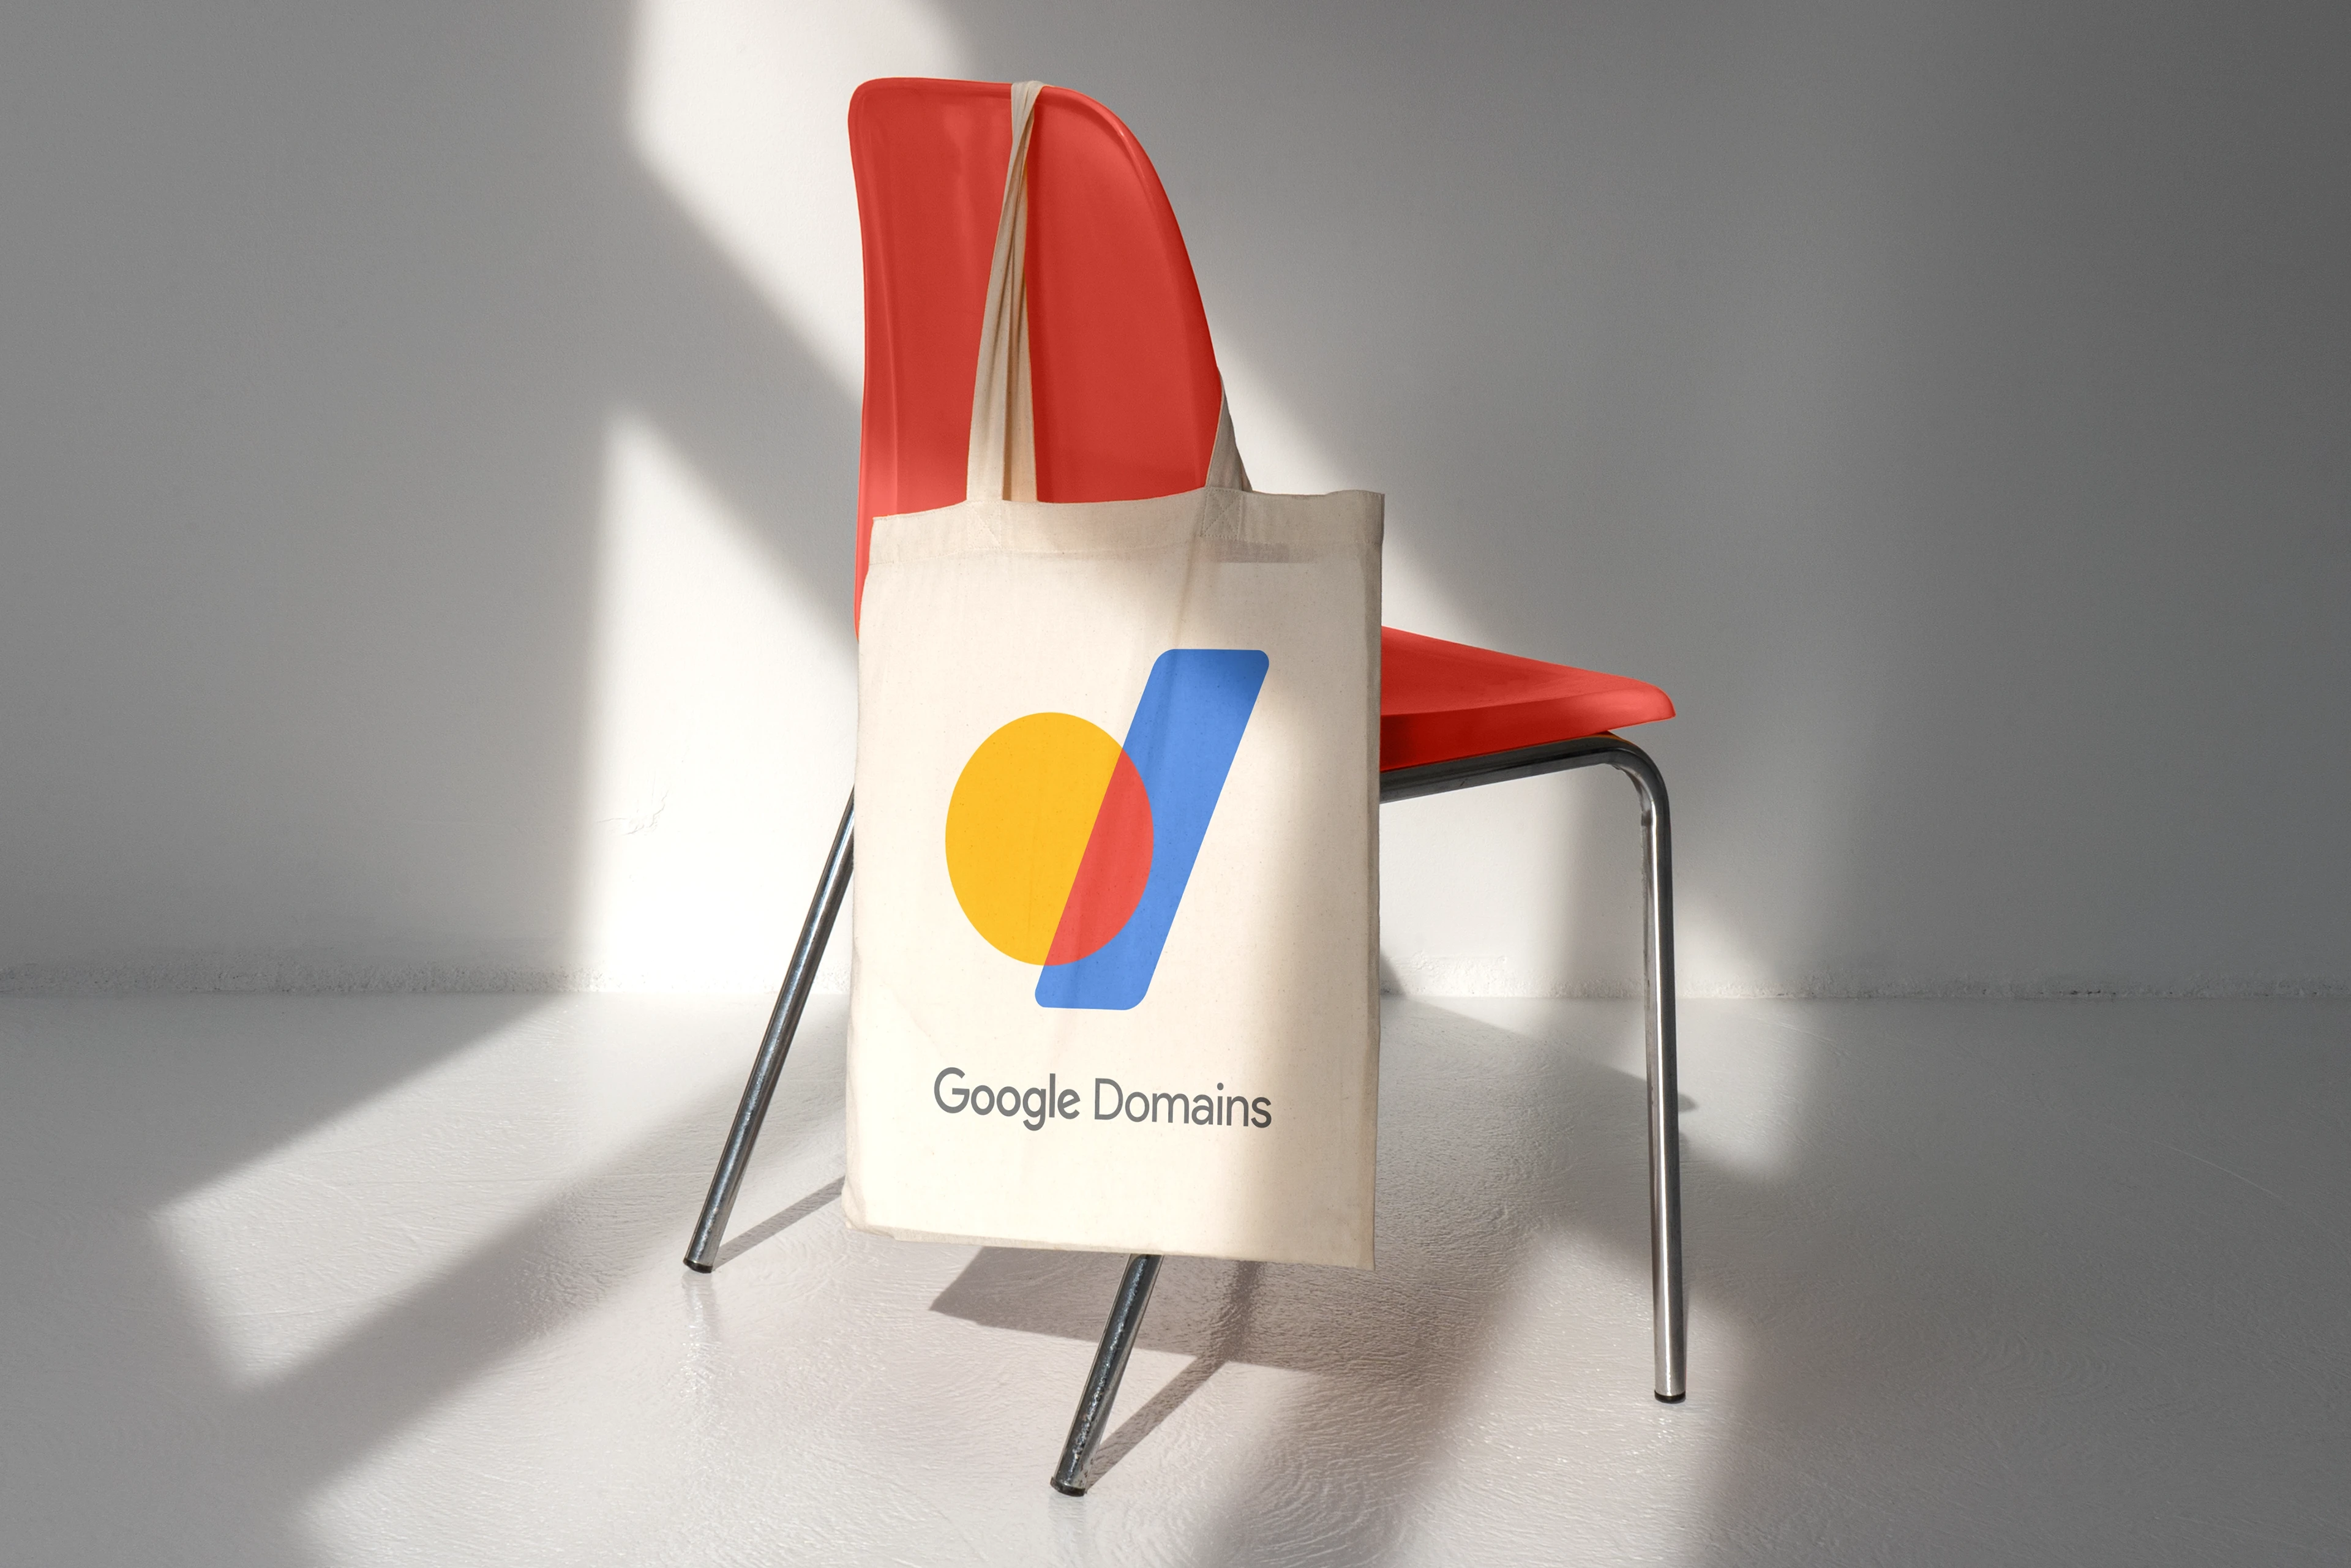 Google-Domains-Bag-Compressed-1